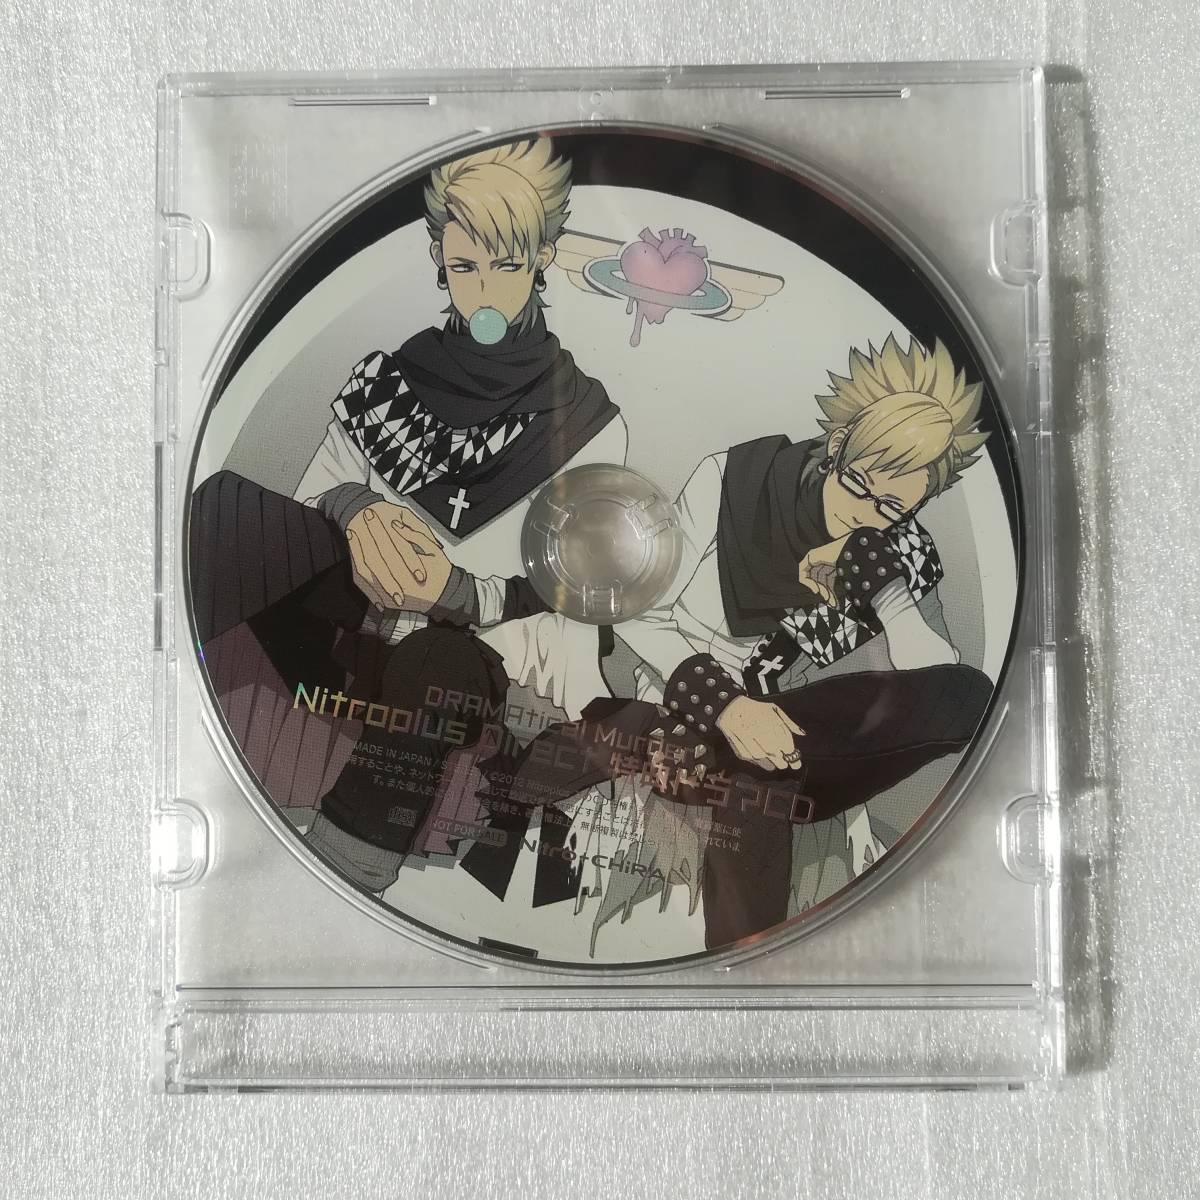 ヤフオク! -「dramatical murder cd」(CD) の落札相場・落札価格